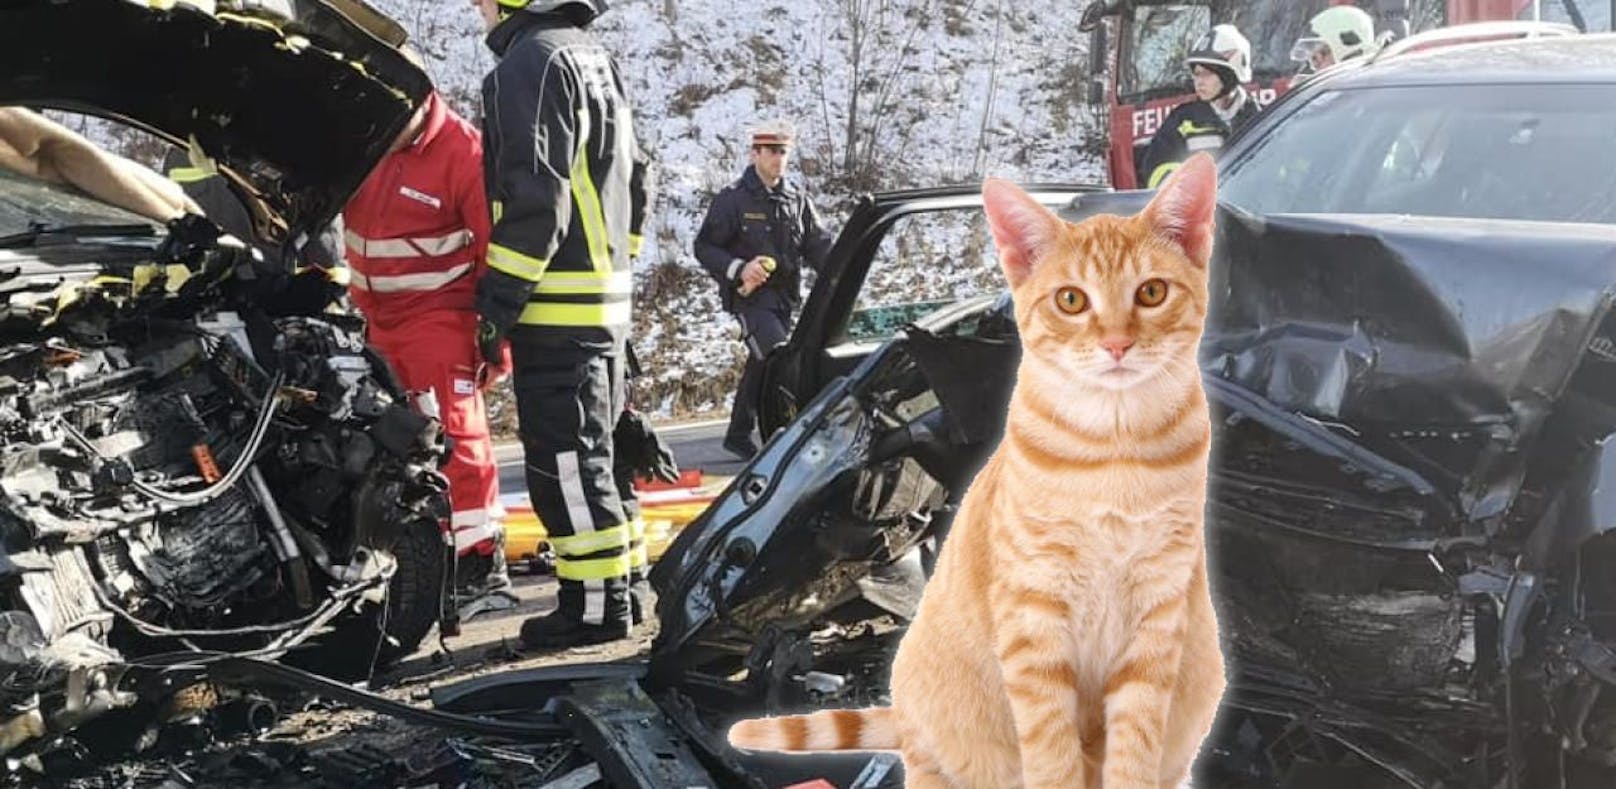 Katze entkam im Auto aus Box – 3 Schwerverletzte